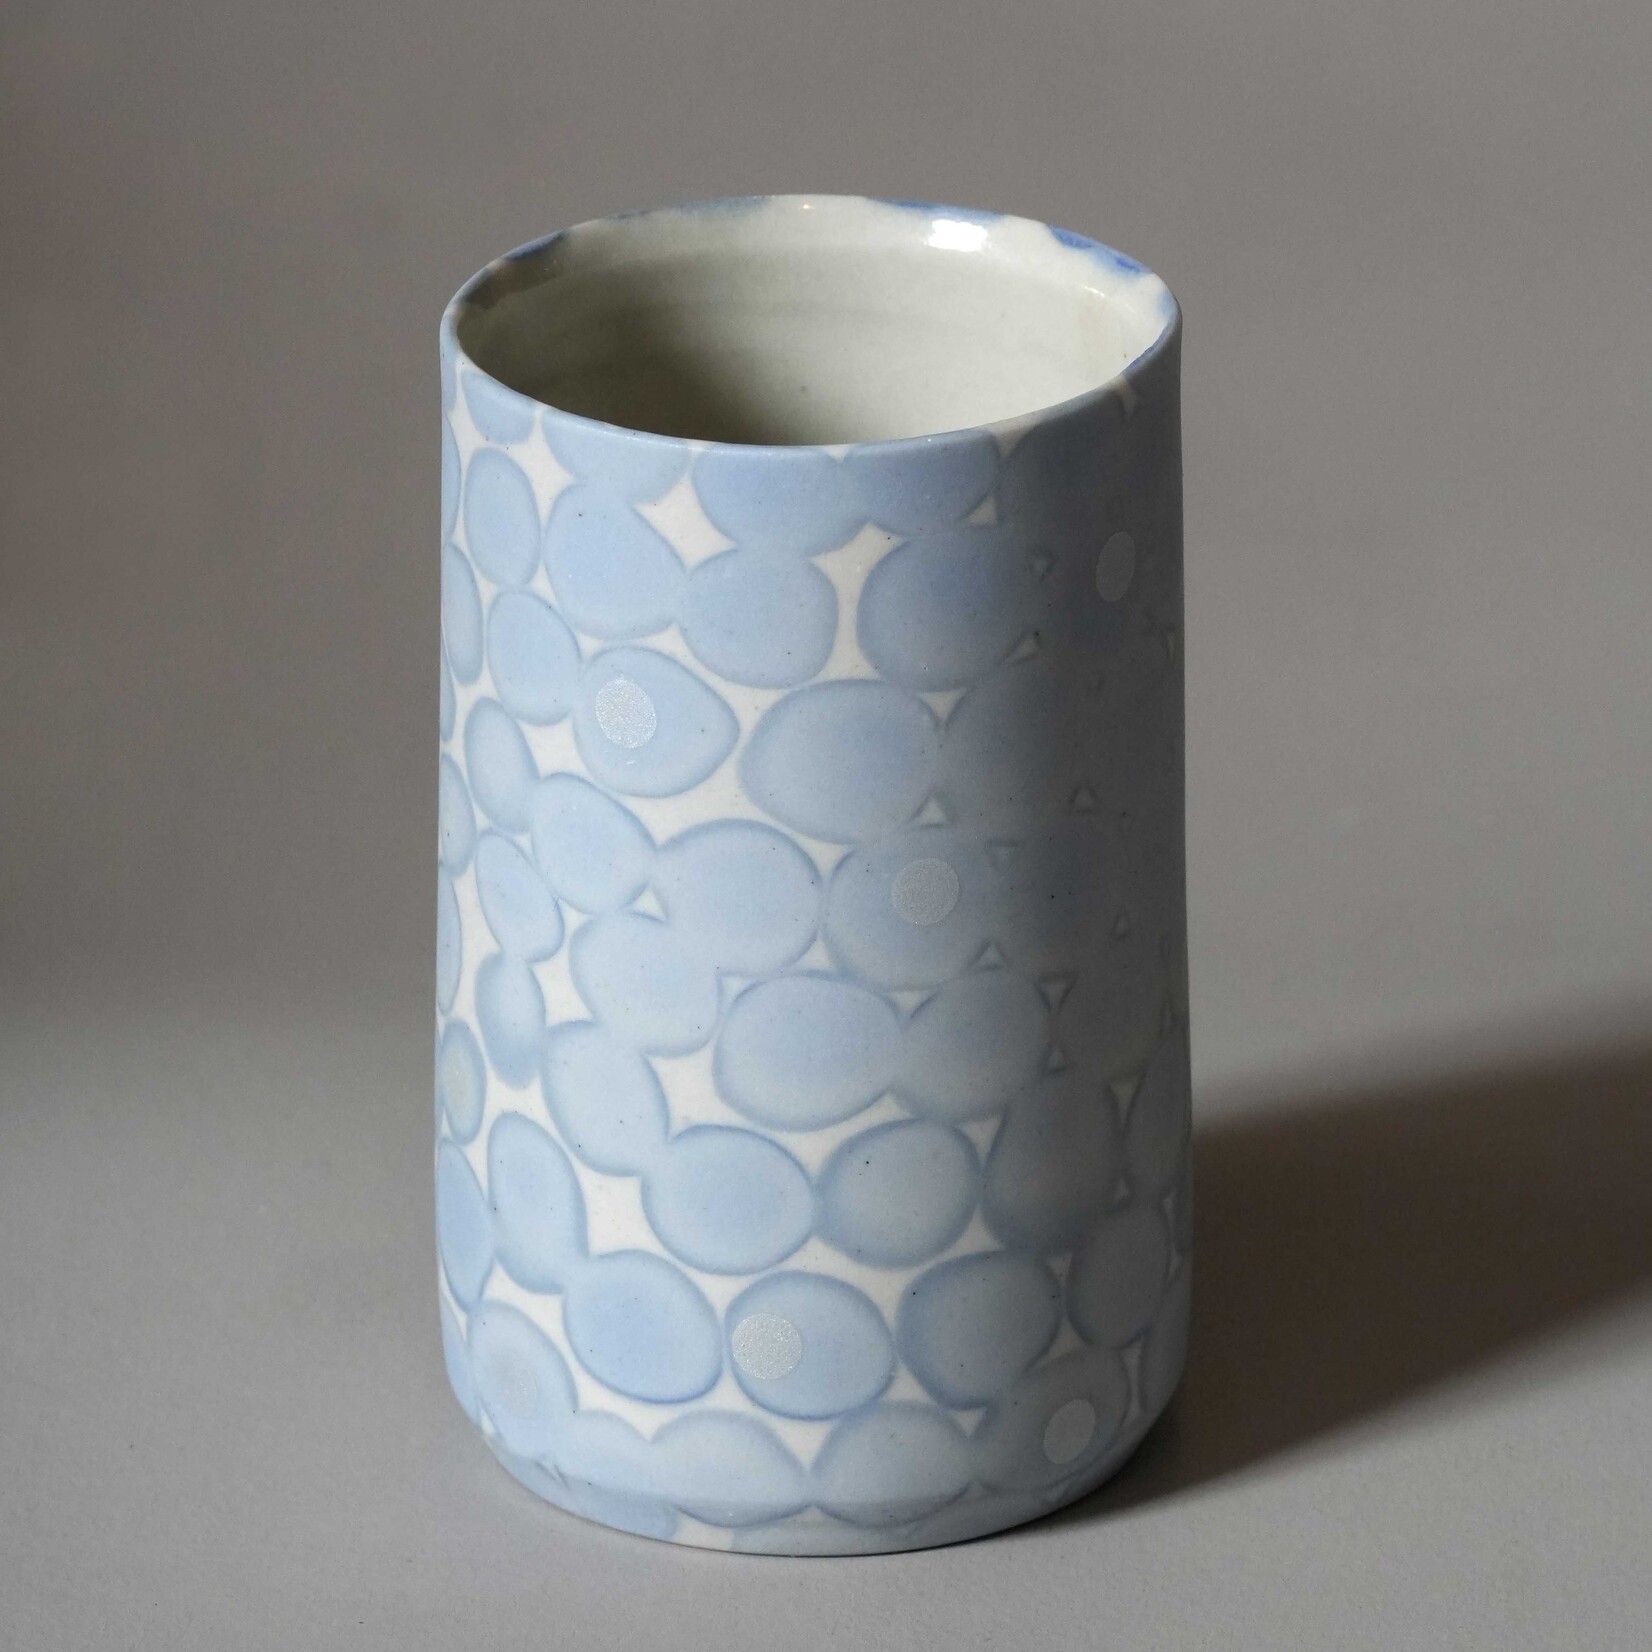 Mollie Bosworth, Cylinder Vase with Pale Blue Dots | Porcelain